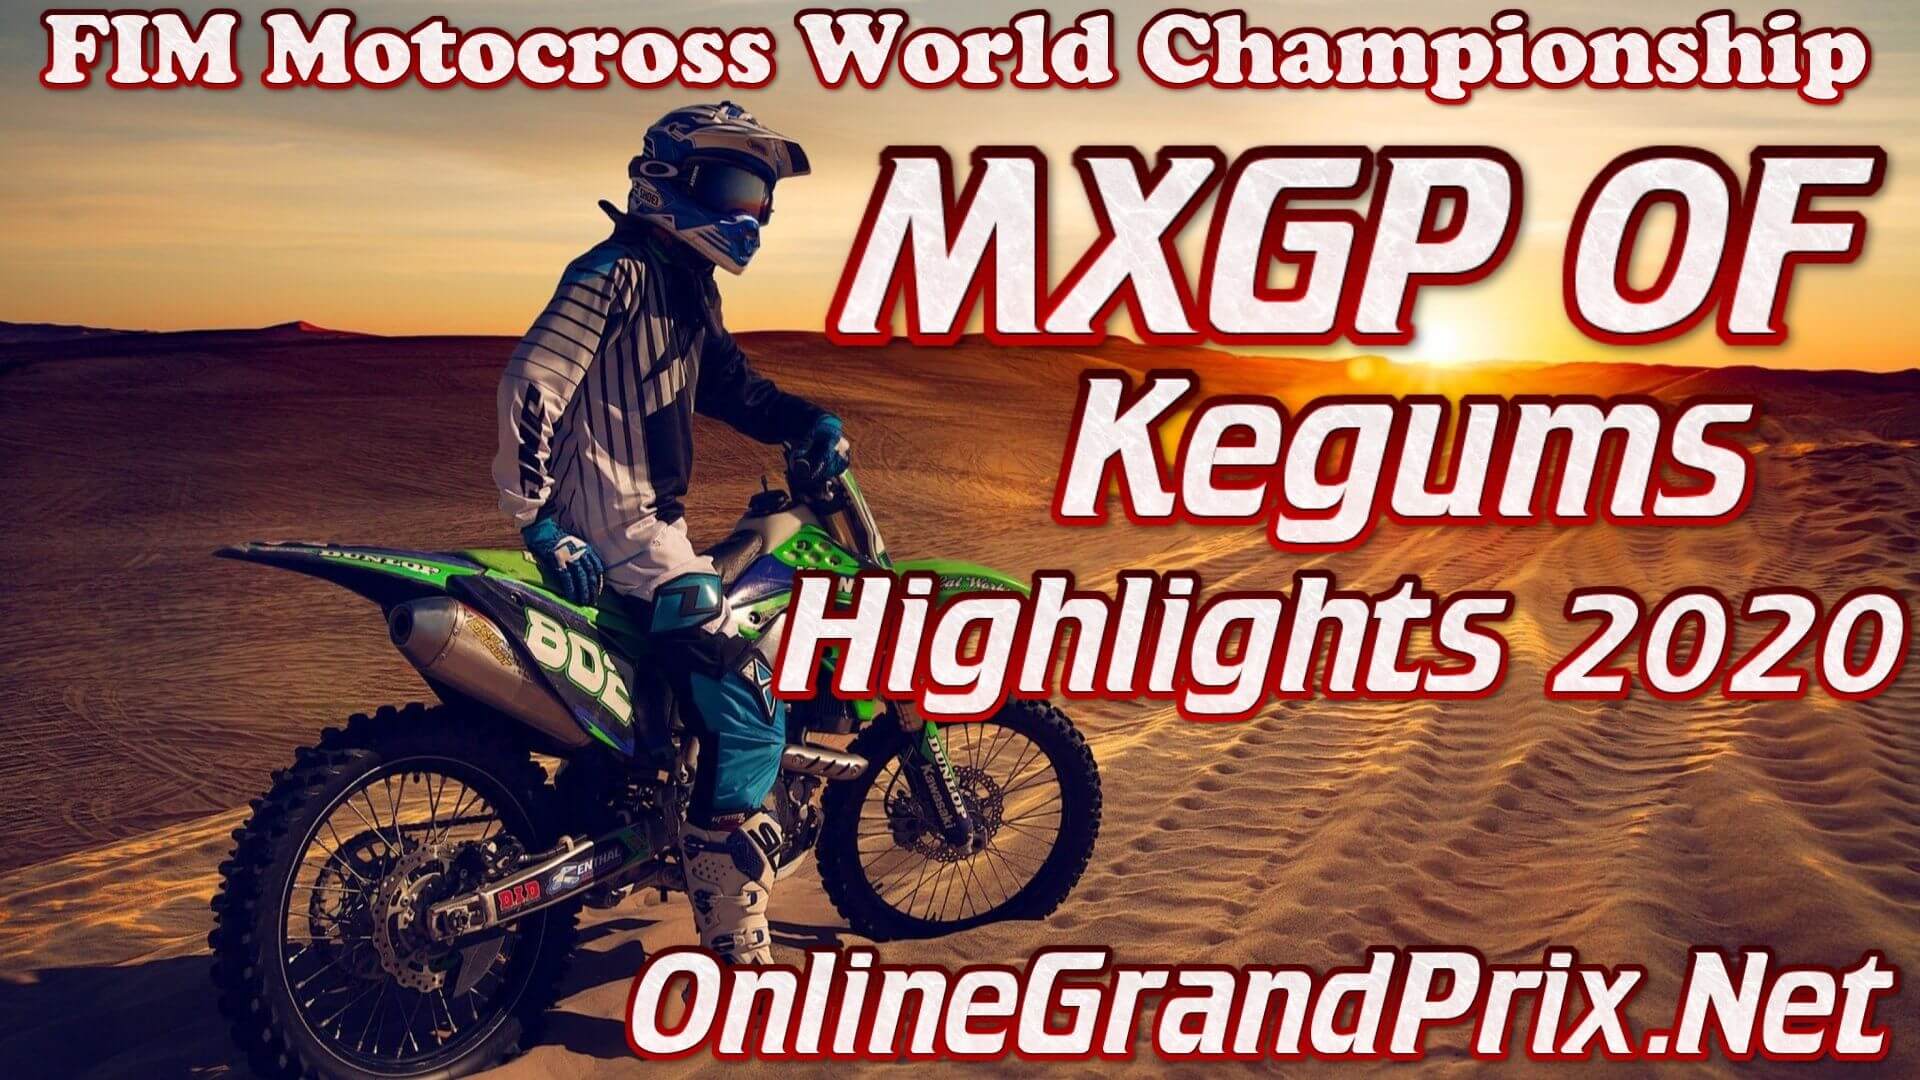 MXGP of Kegums Highlights 2020